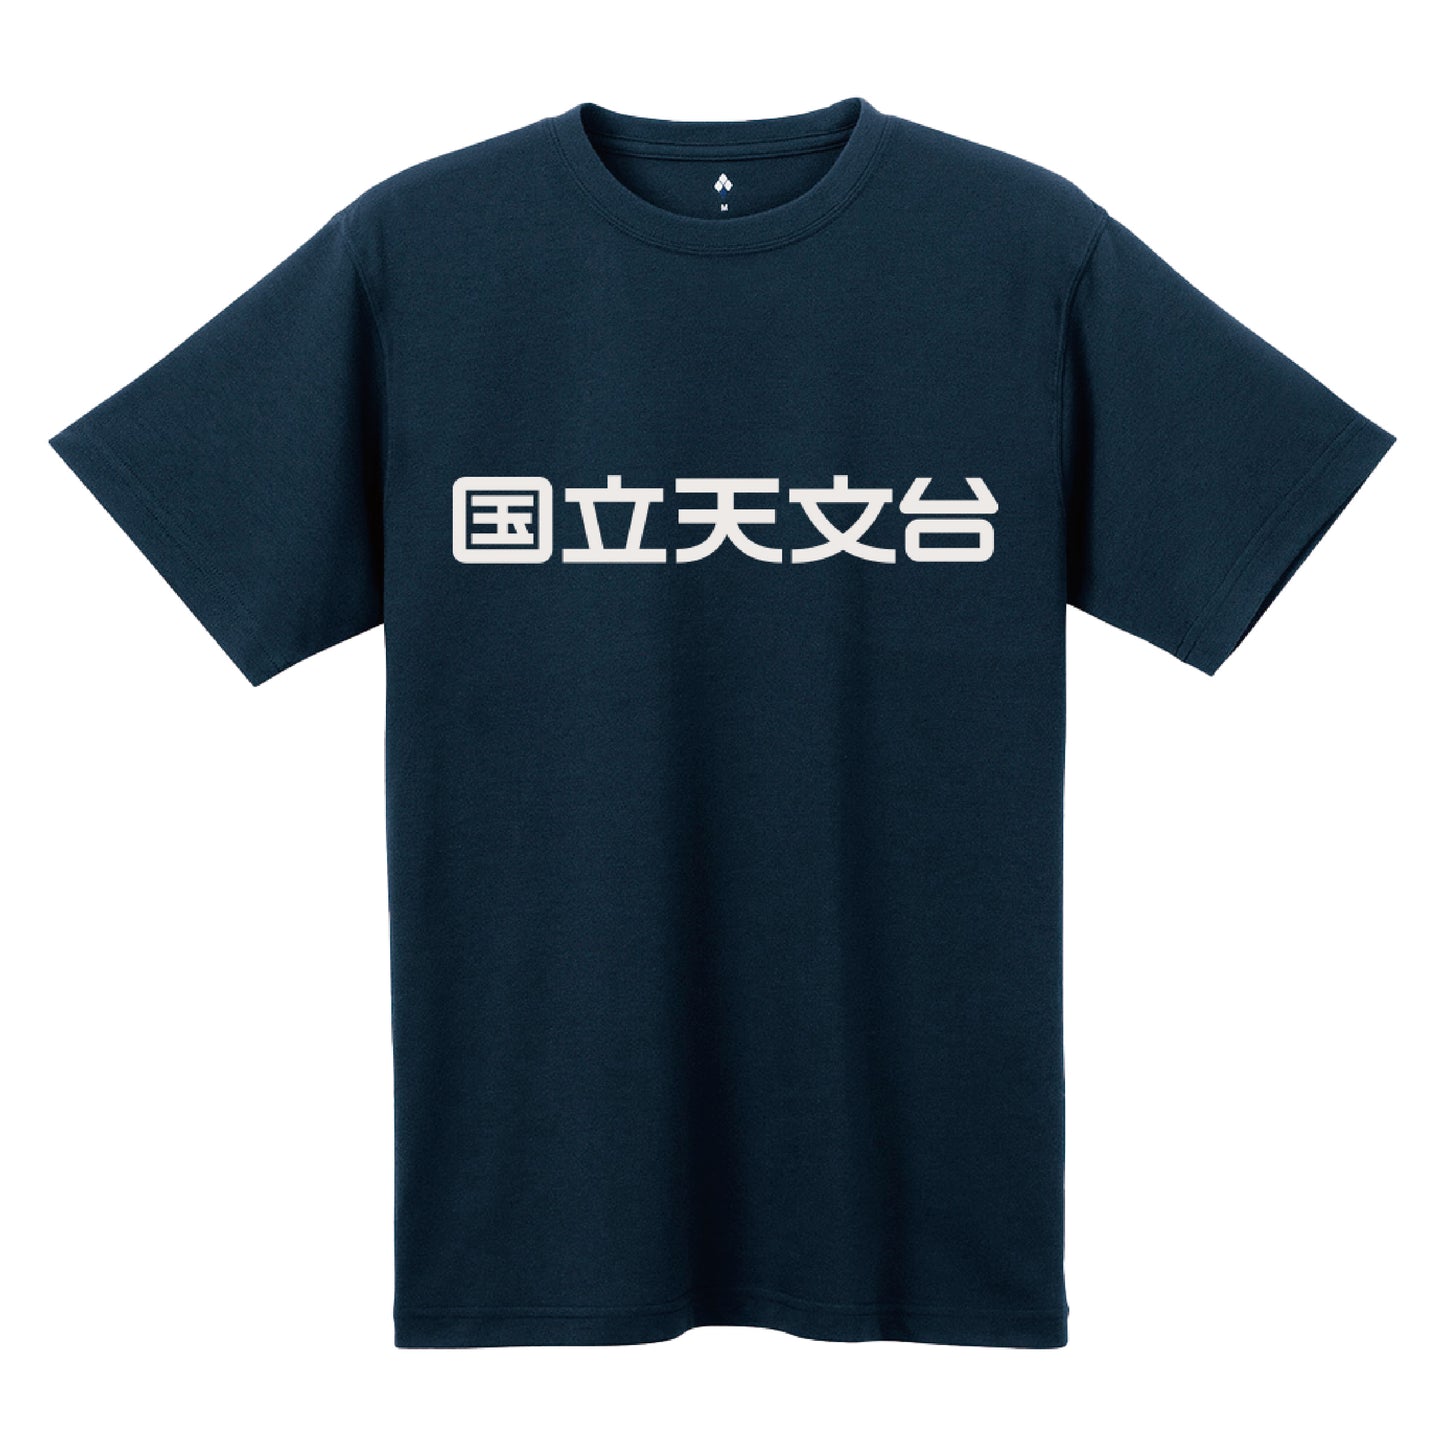 国立天文台 NAOJ漢字 ロゴマーク WIC. Tシャツ ネイビー M 00